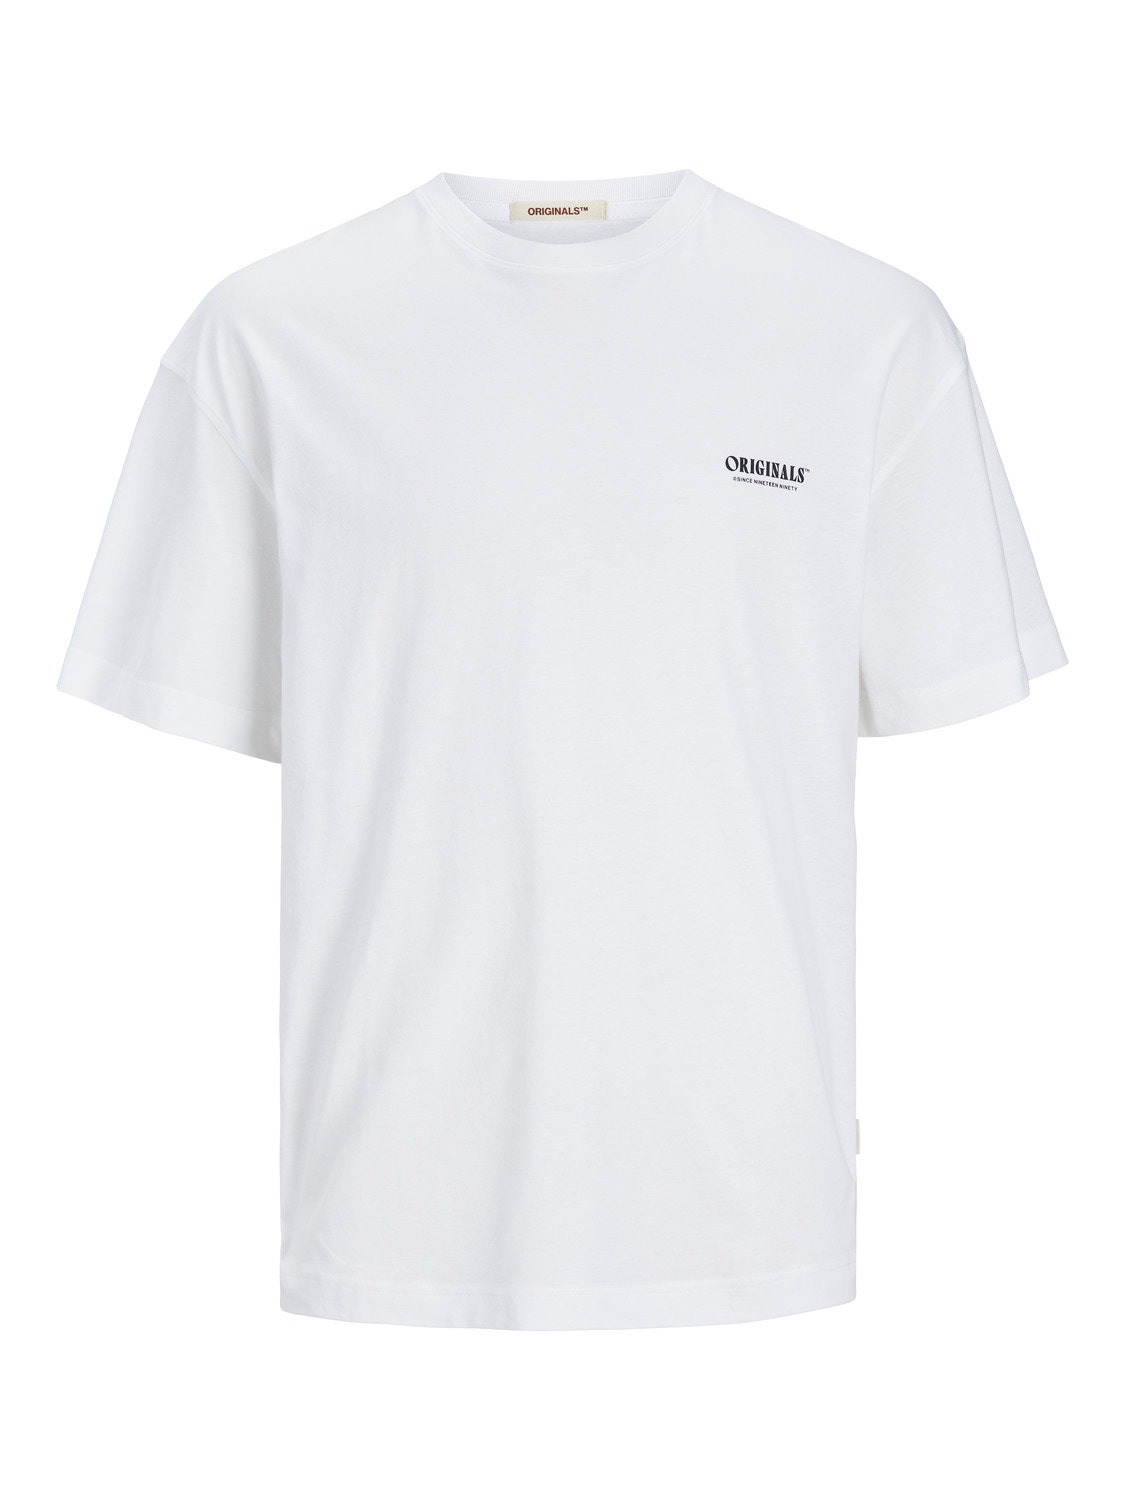 Jack & Jones T-shirt Estampar Decote Redondo -Bright White - 12256254